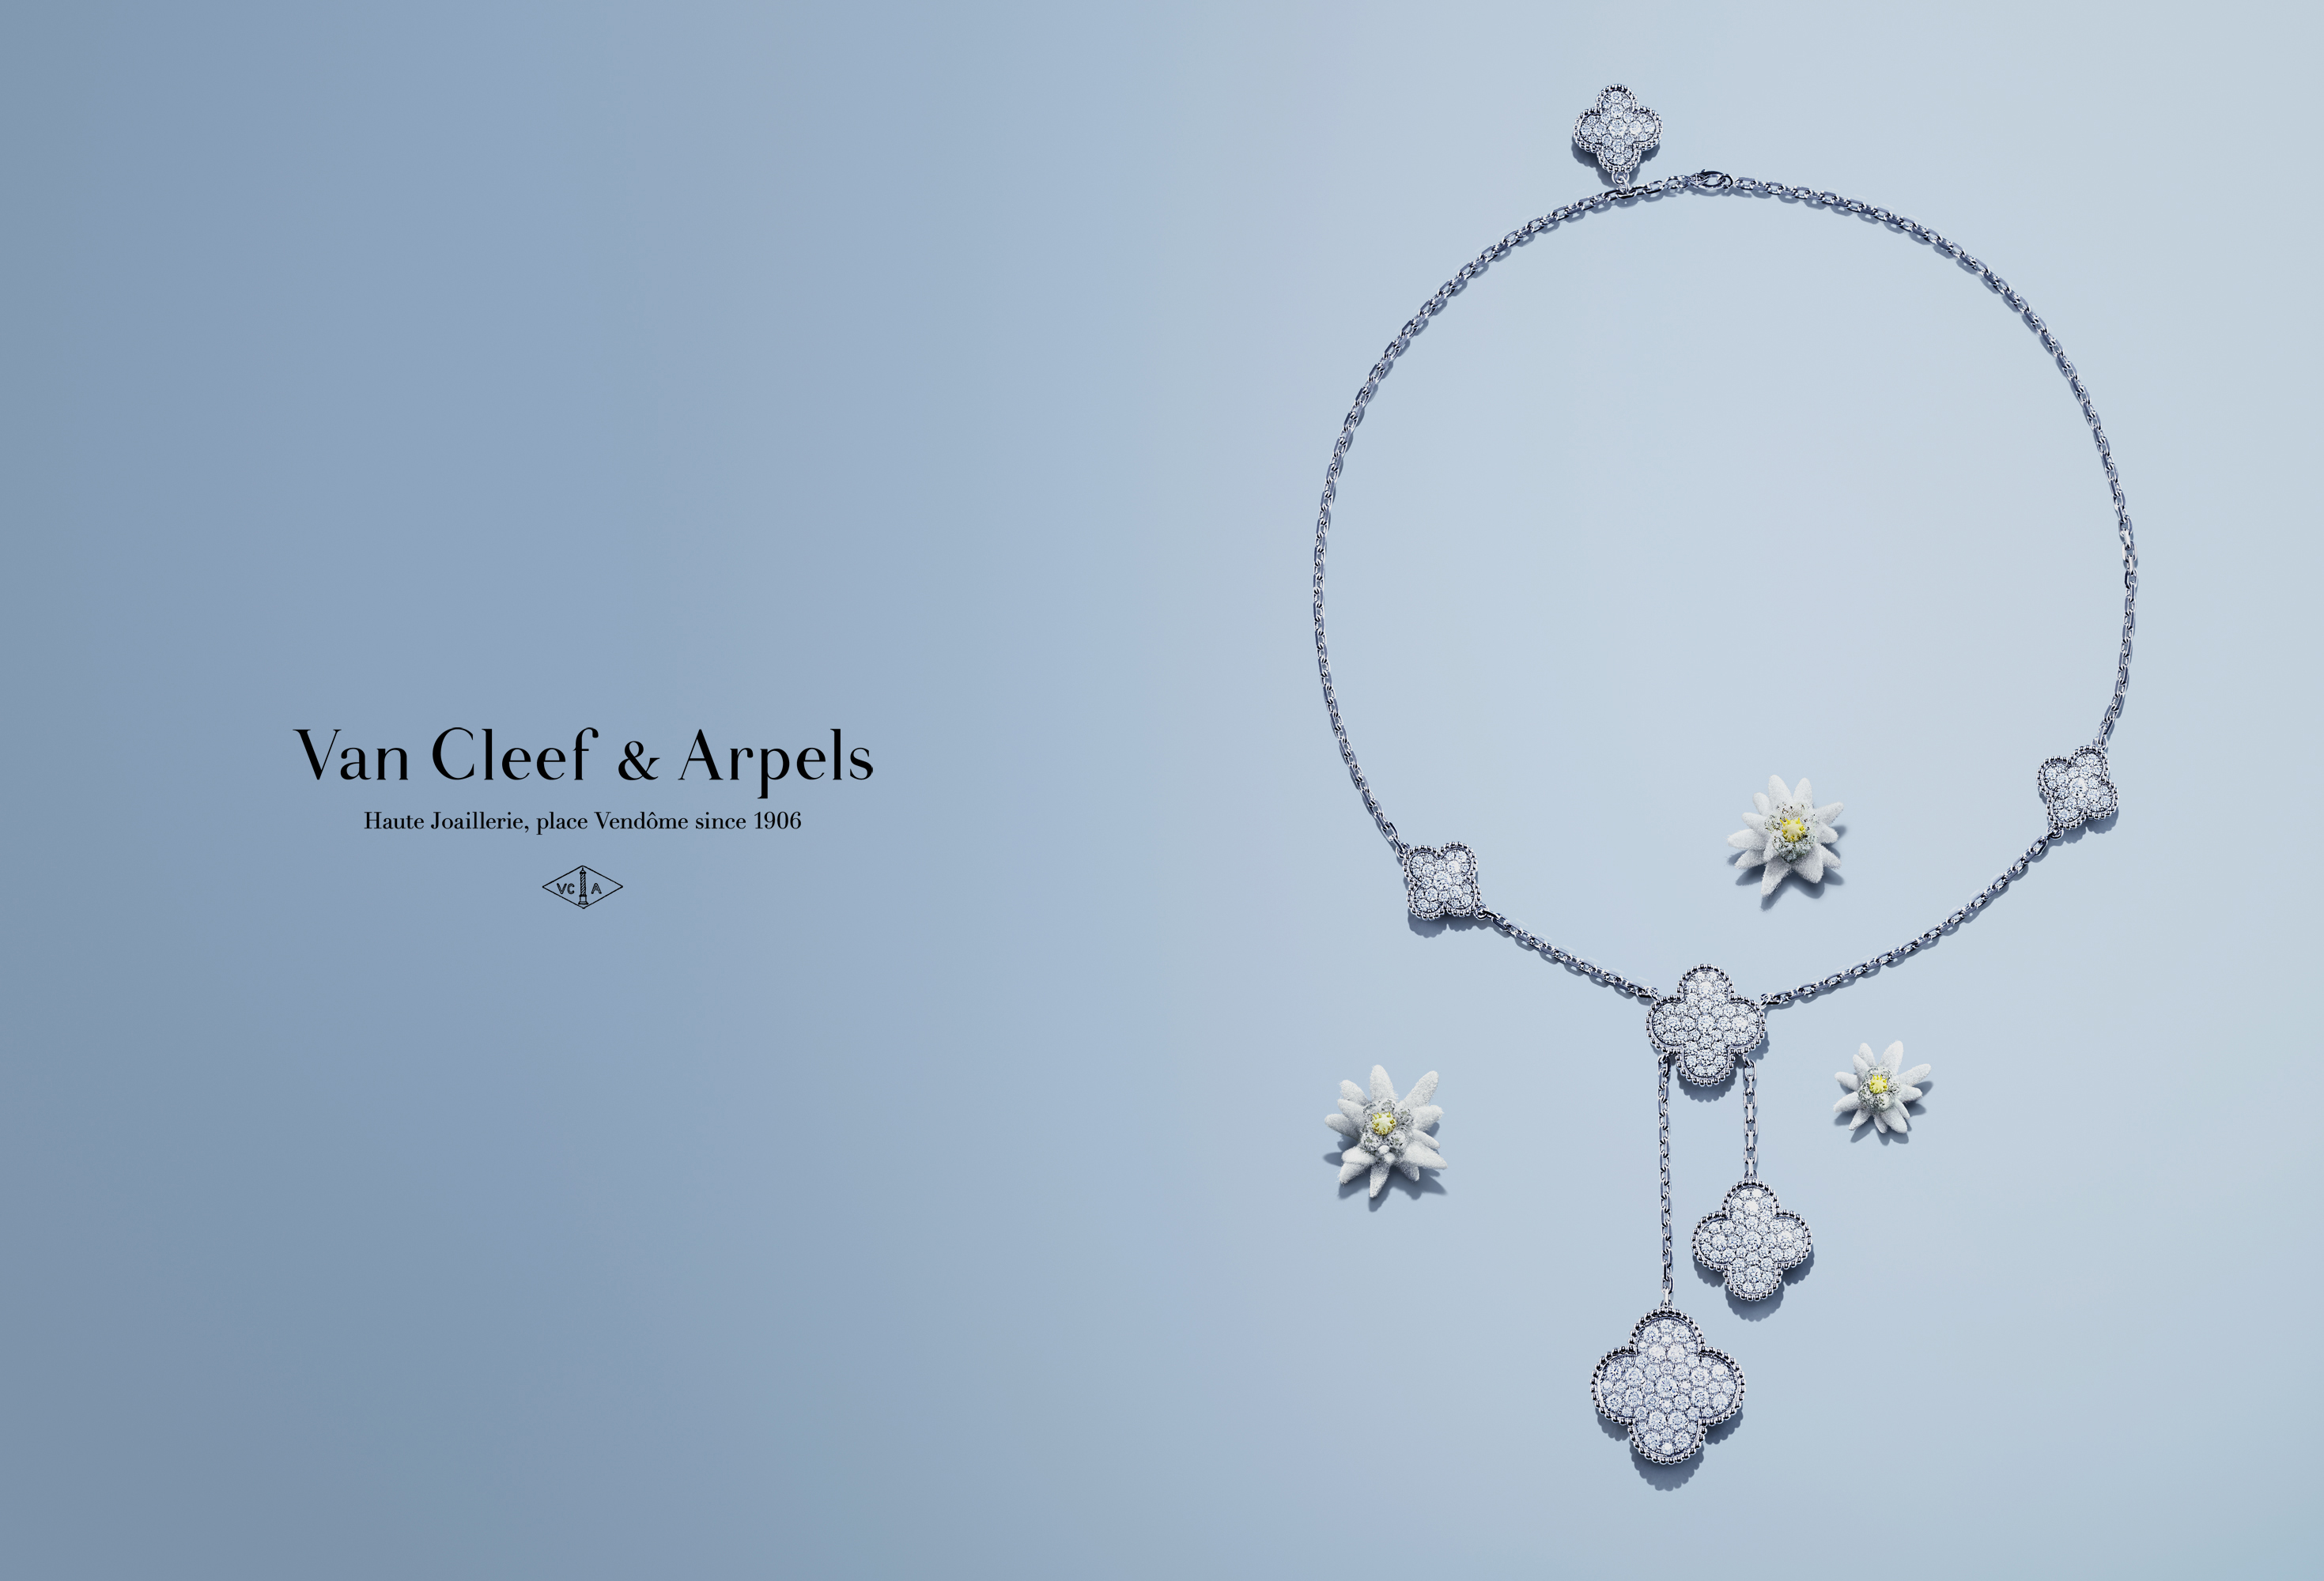 Клиф бренд. Van Cleef & Arpels: бренд,. Бижутерия van Cleef & Arpels реклама. Van Cleef Arpels одежда. Van Cleef Arpels логотип бренда.